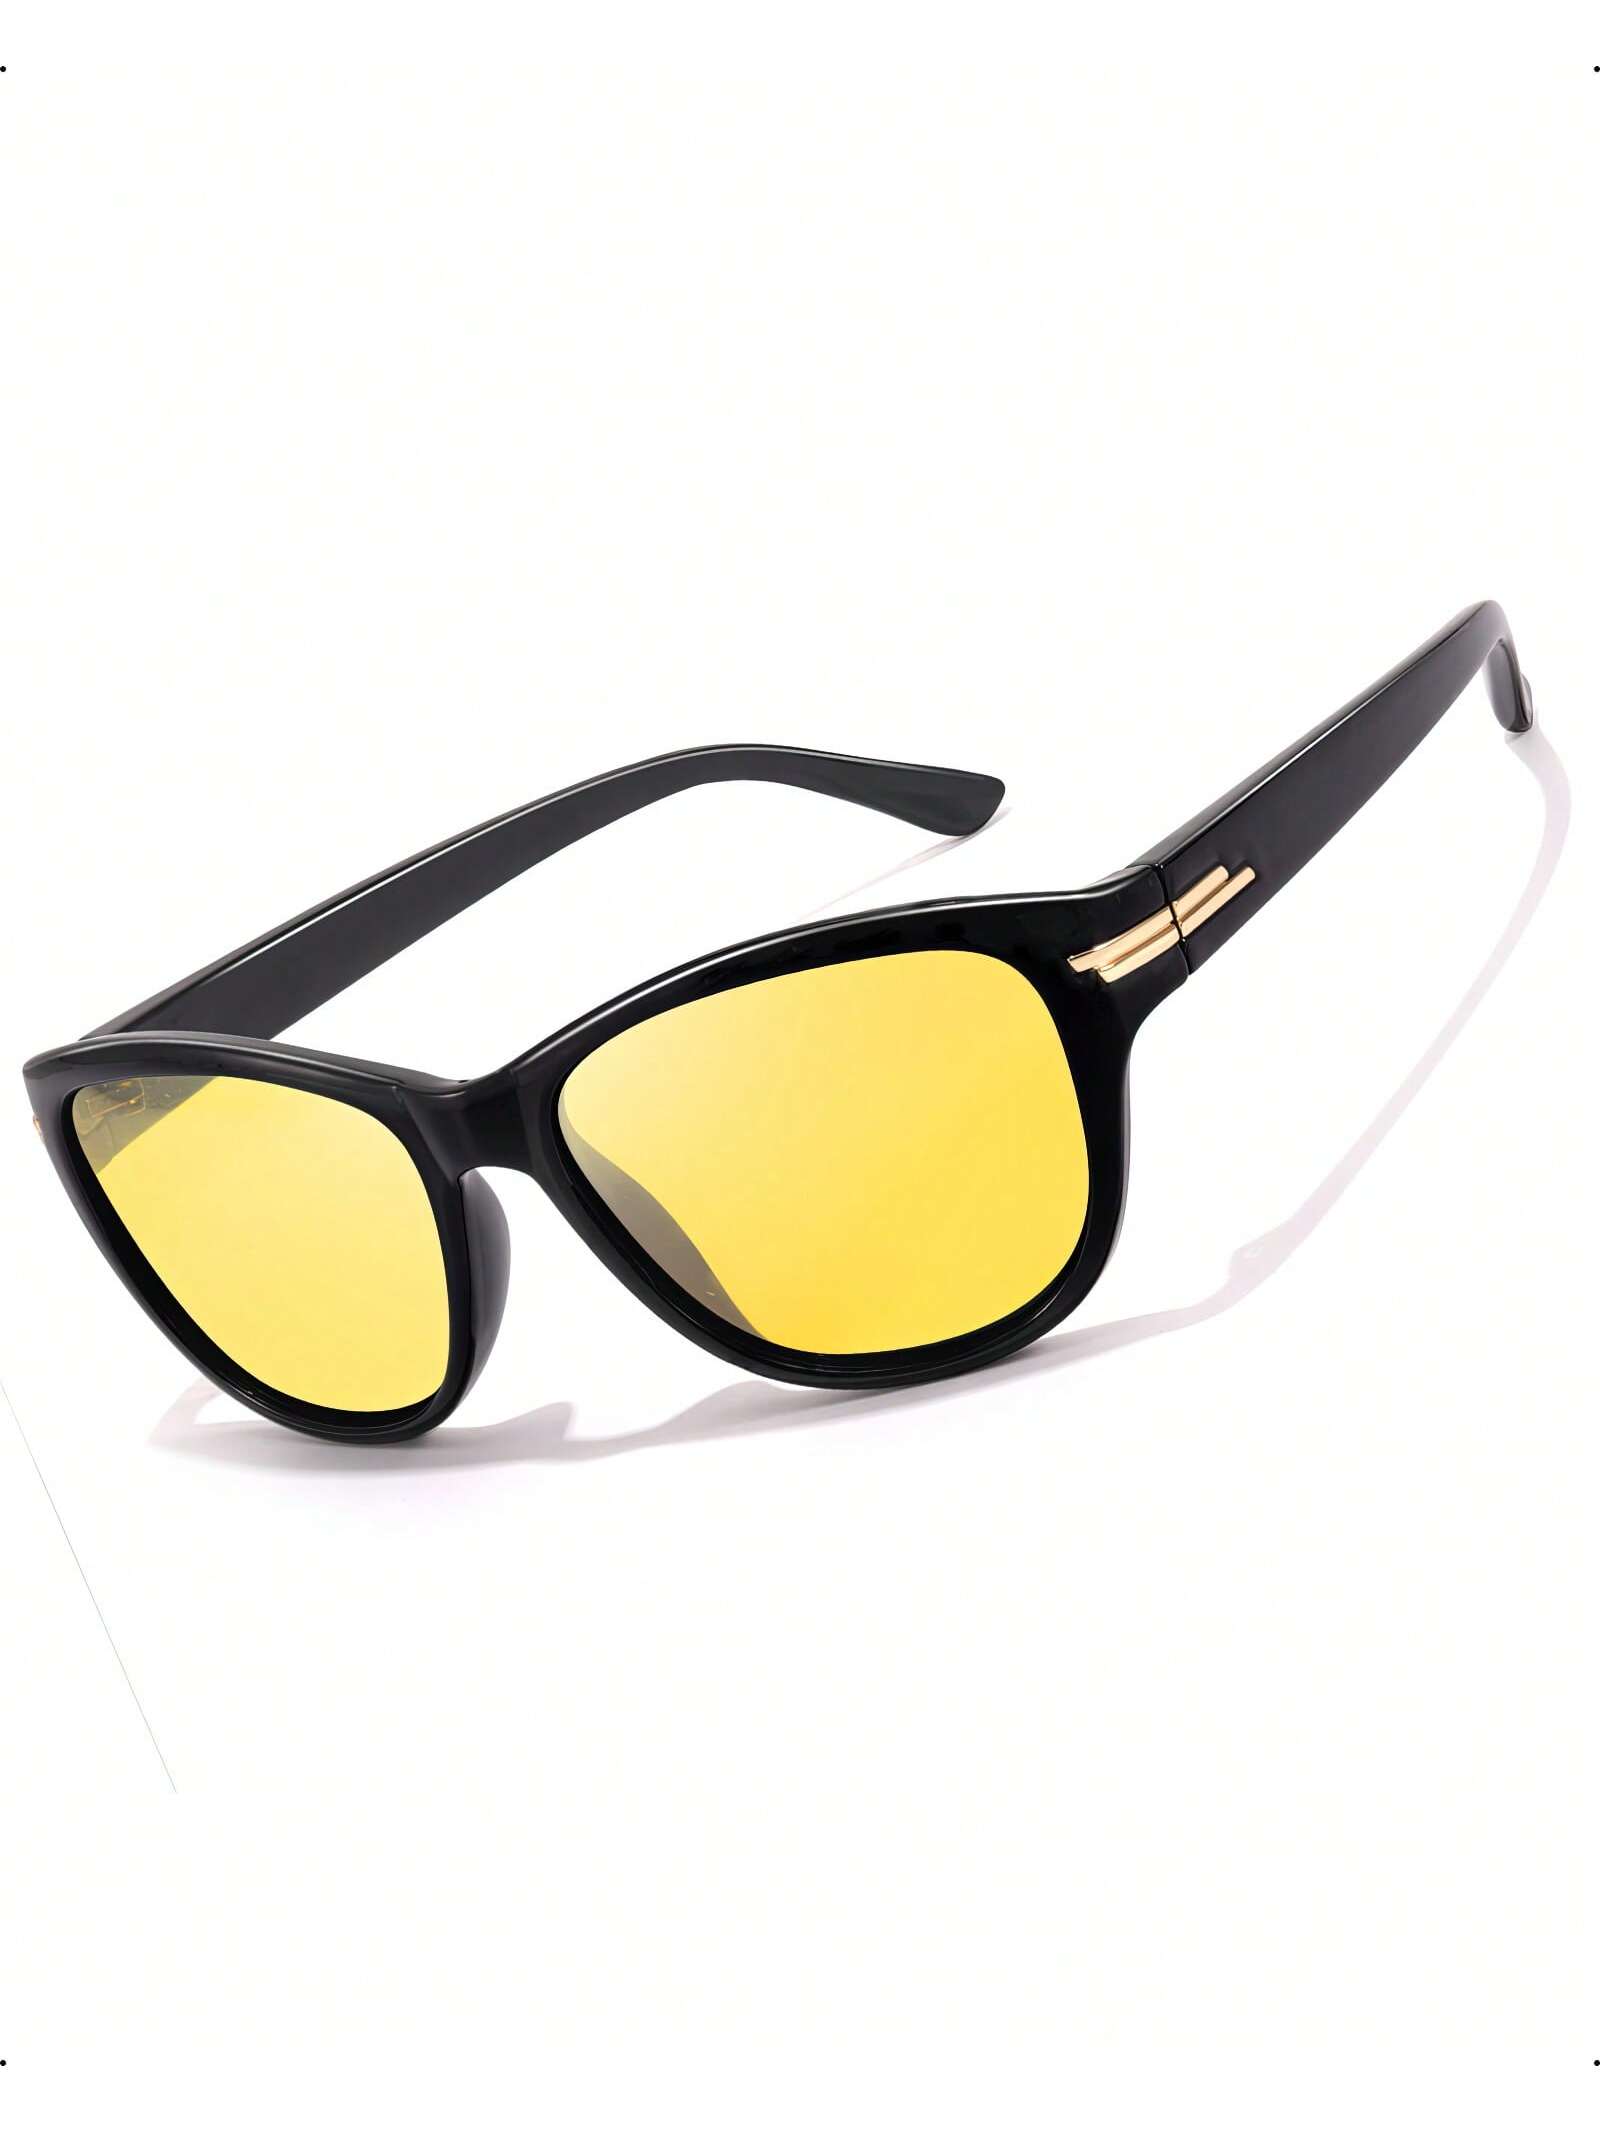 LVIOE 1 пара очков для ночного вождения для женщин и мужчин антибликовые поляризационные желтые очки ночного видения для ночного времени LN2317 очки ночного видения шпионы с увеличительным стеклом